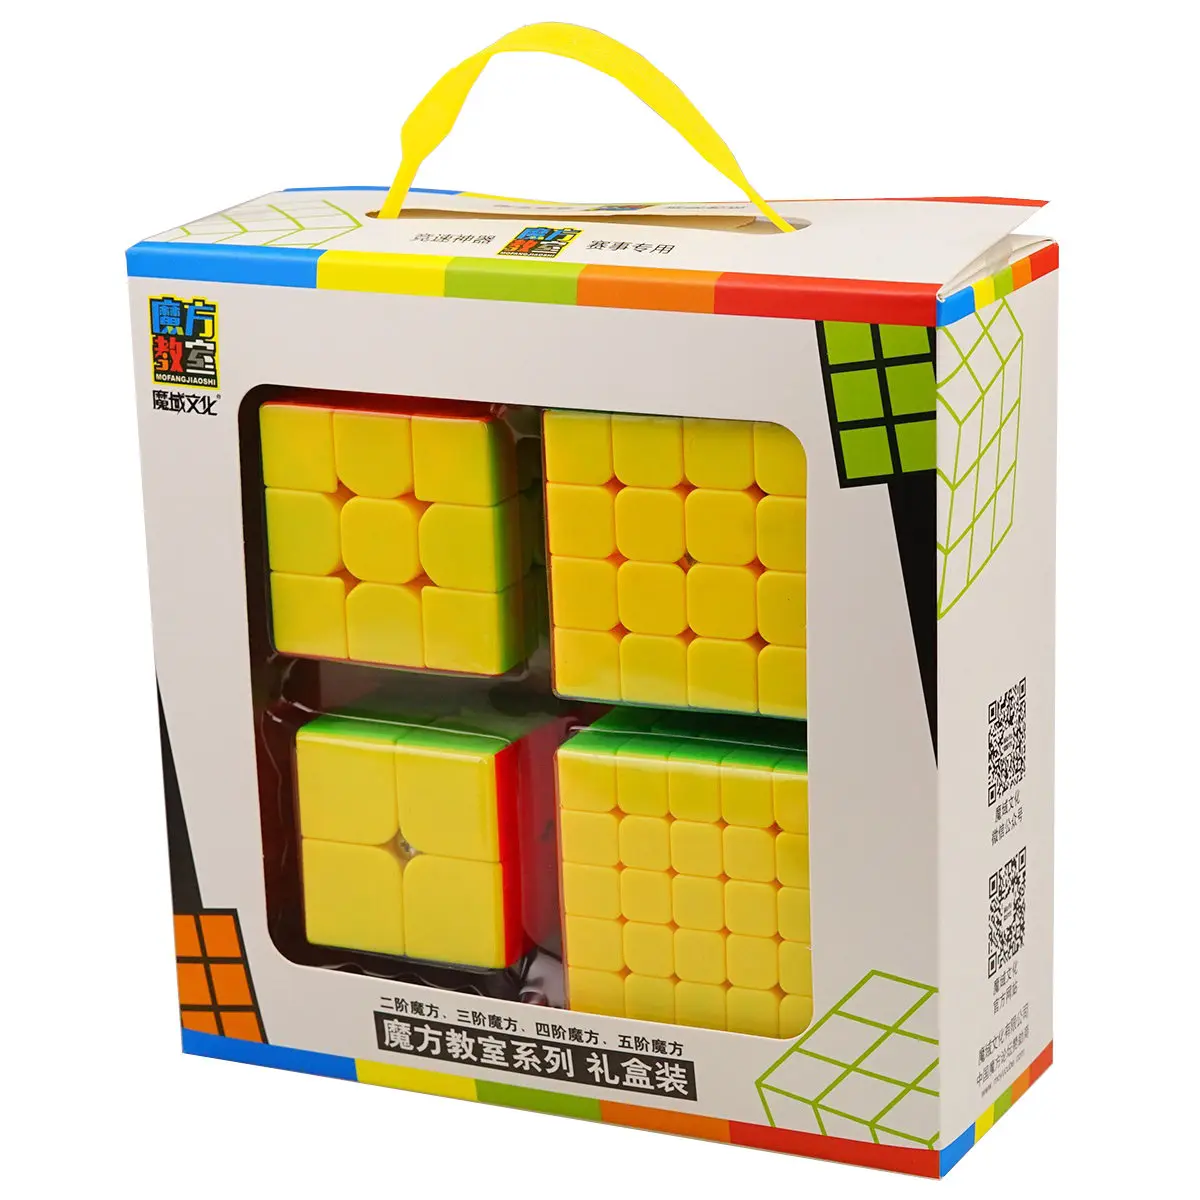 Набор скоростных кубиков, Moyu Mofang Jiaoshi MF2S 2x2 MF3S 3x3 MF4S 4x4 MF5S 5x5 Stickerless Magic Cube 234 набор с подарочной коробкой - Цвет: 2-3-4-5 Suit